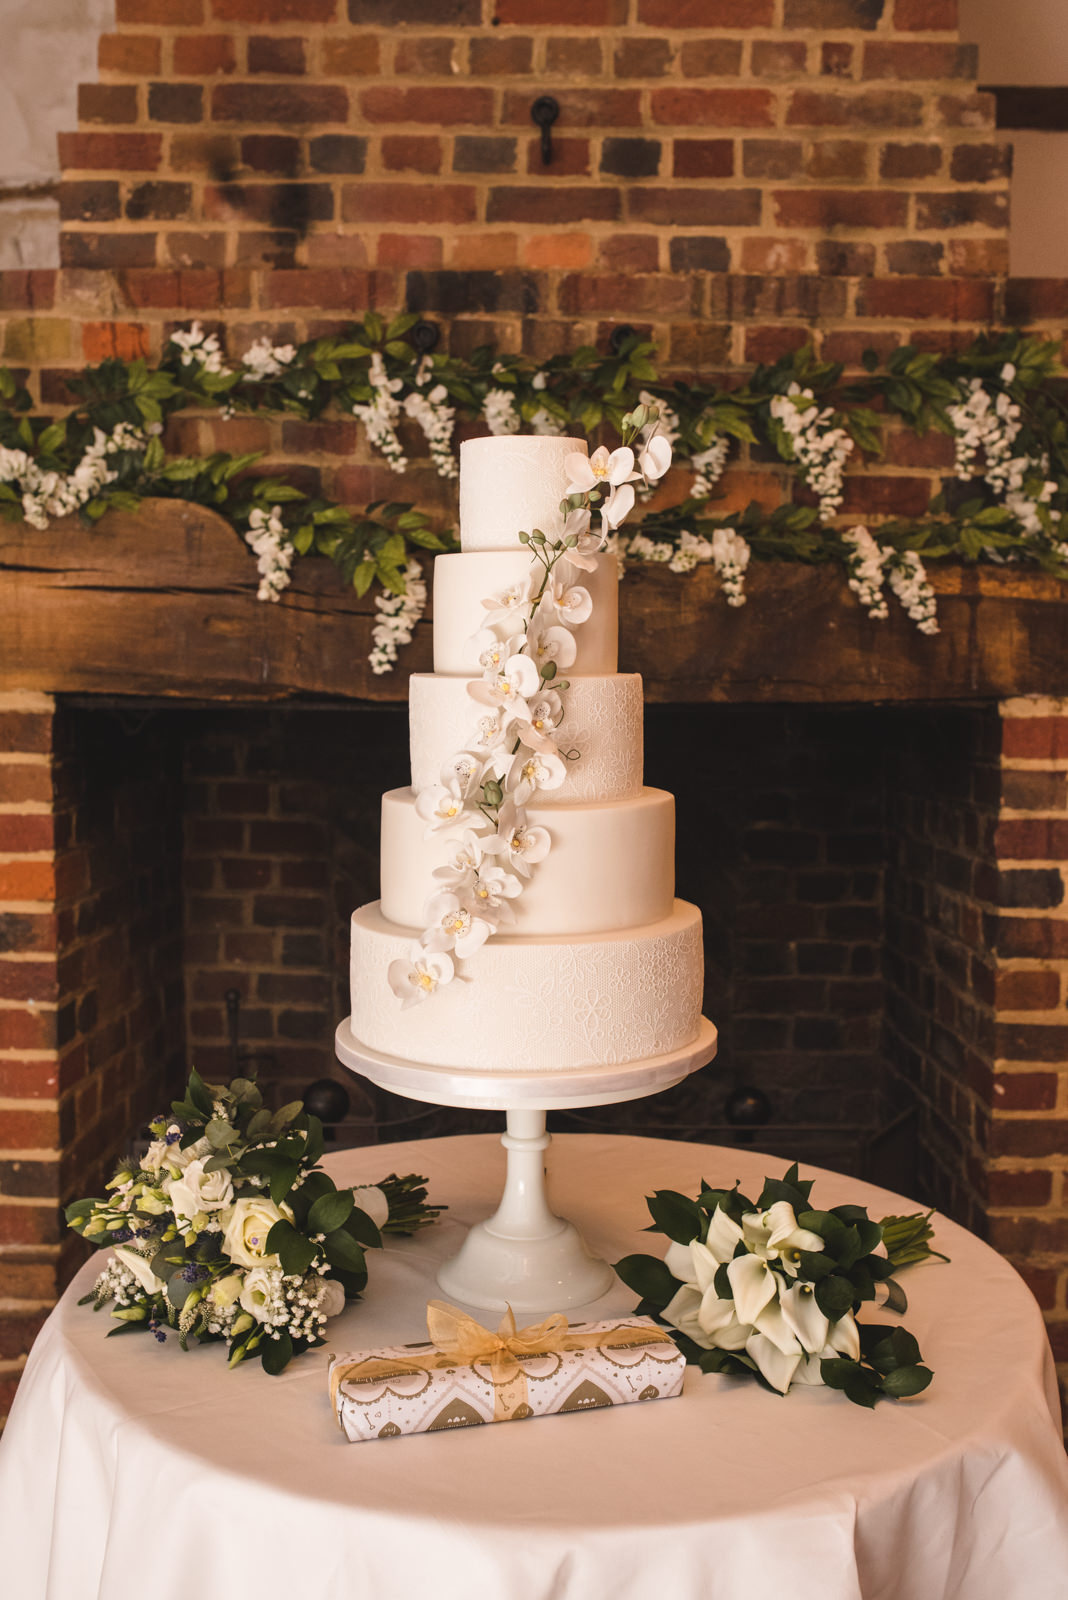 Forever Cakes Farnham wedding cake at Lainston House.